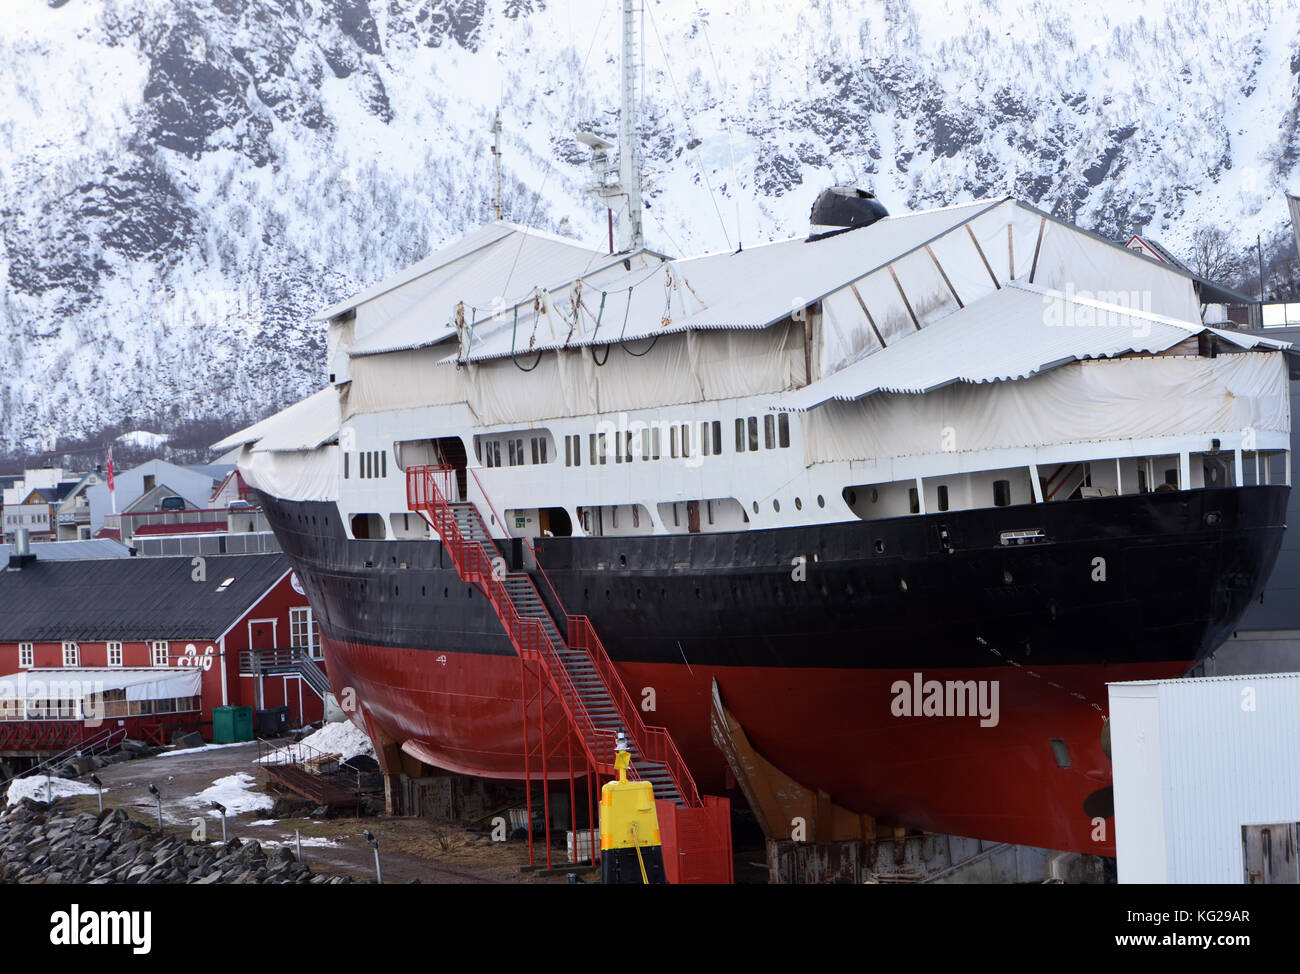 Il Museo di Hurtigruten e la nave Hurtigruten M/S Finnmarken in Stokmarknes d'inverno. Stokmarknes, Nordland, Norvegia. Foto Stock